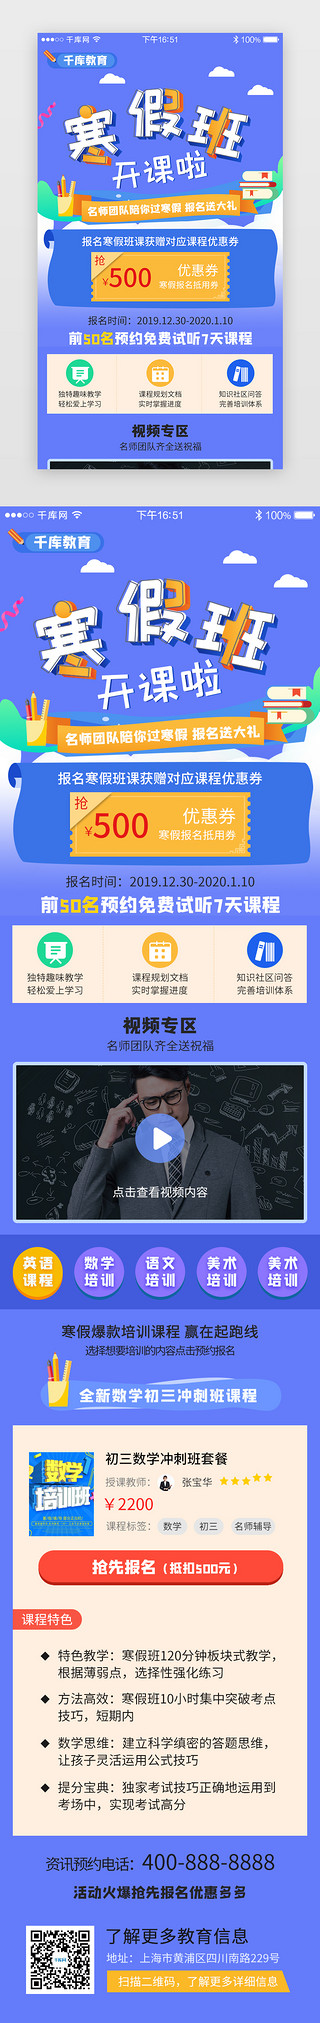 寒假3dUI设计素材_蓝色系app寒假培训教育H5